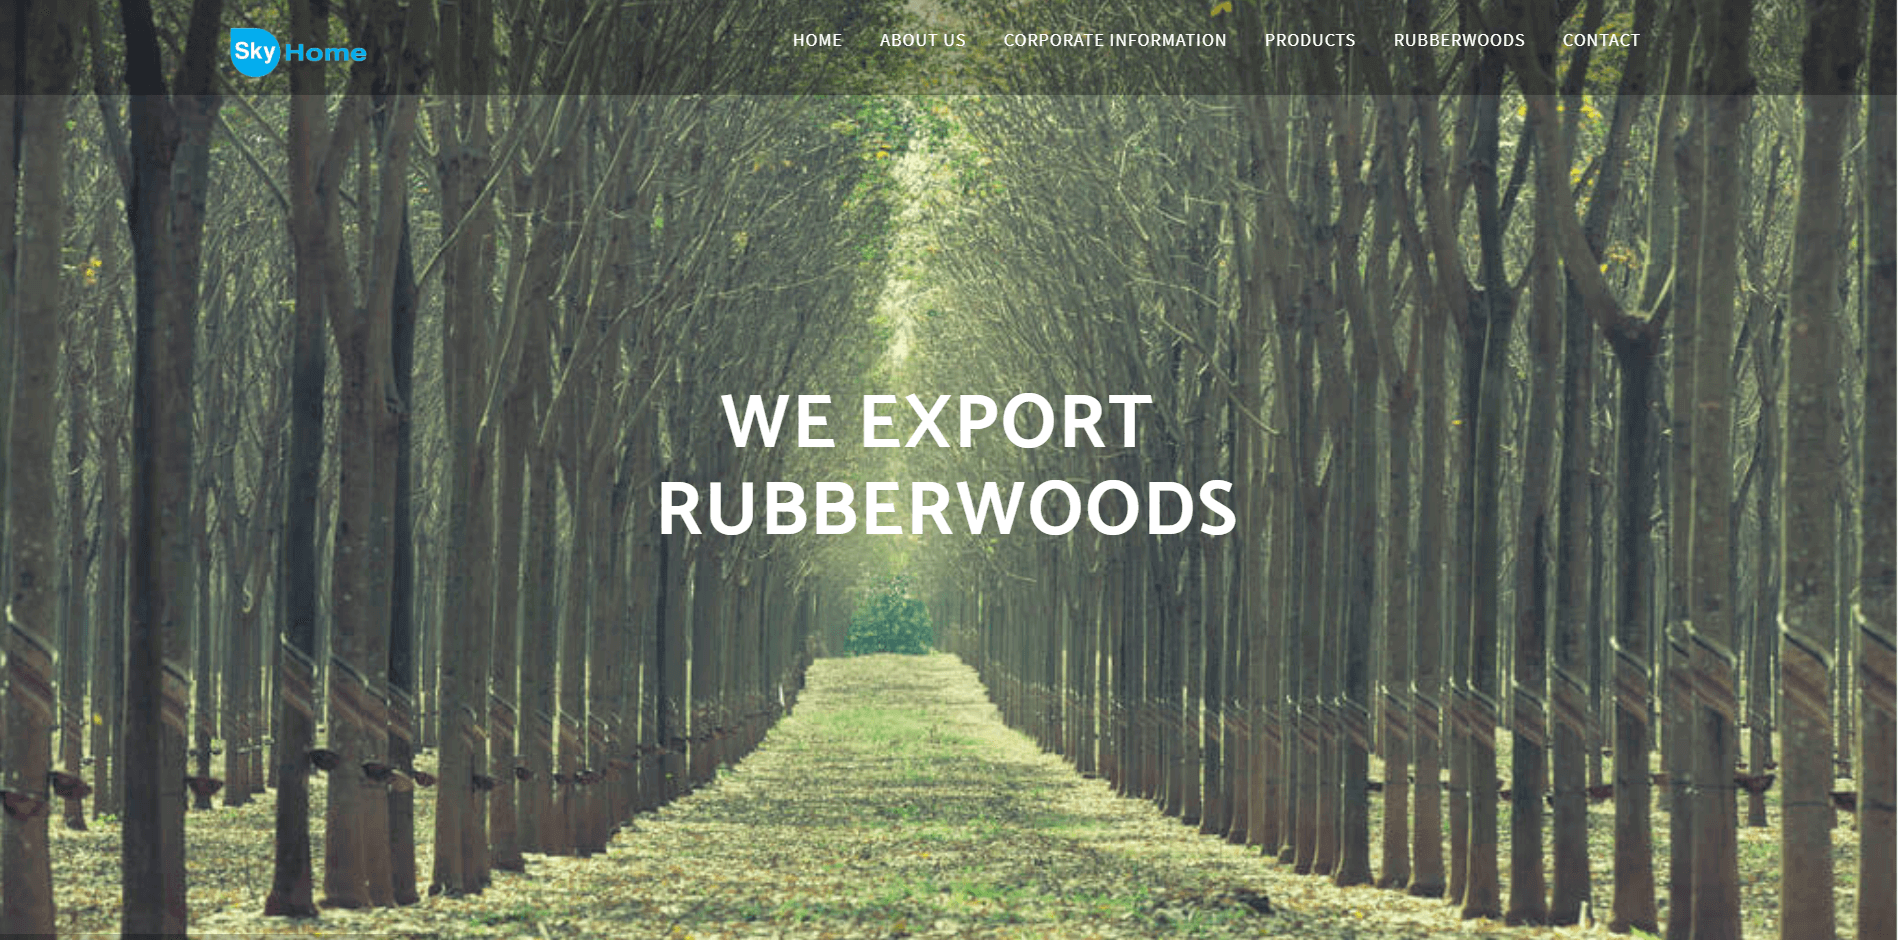 Sky Home Rubberwoods - CMS Website